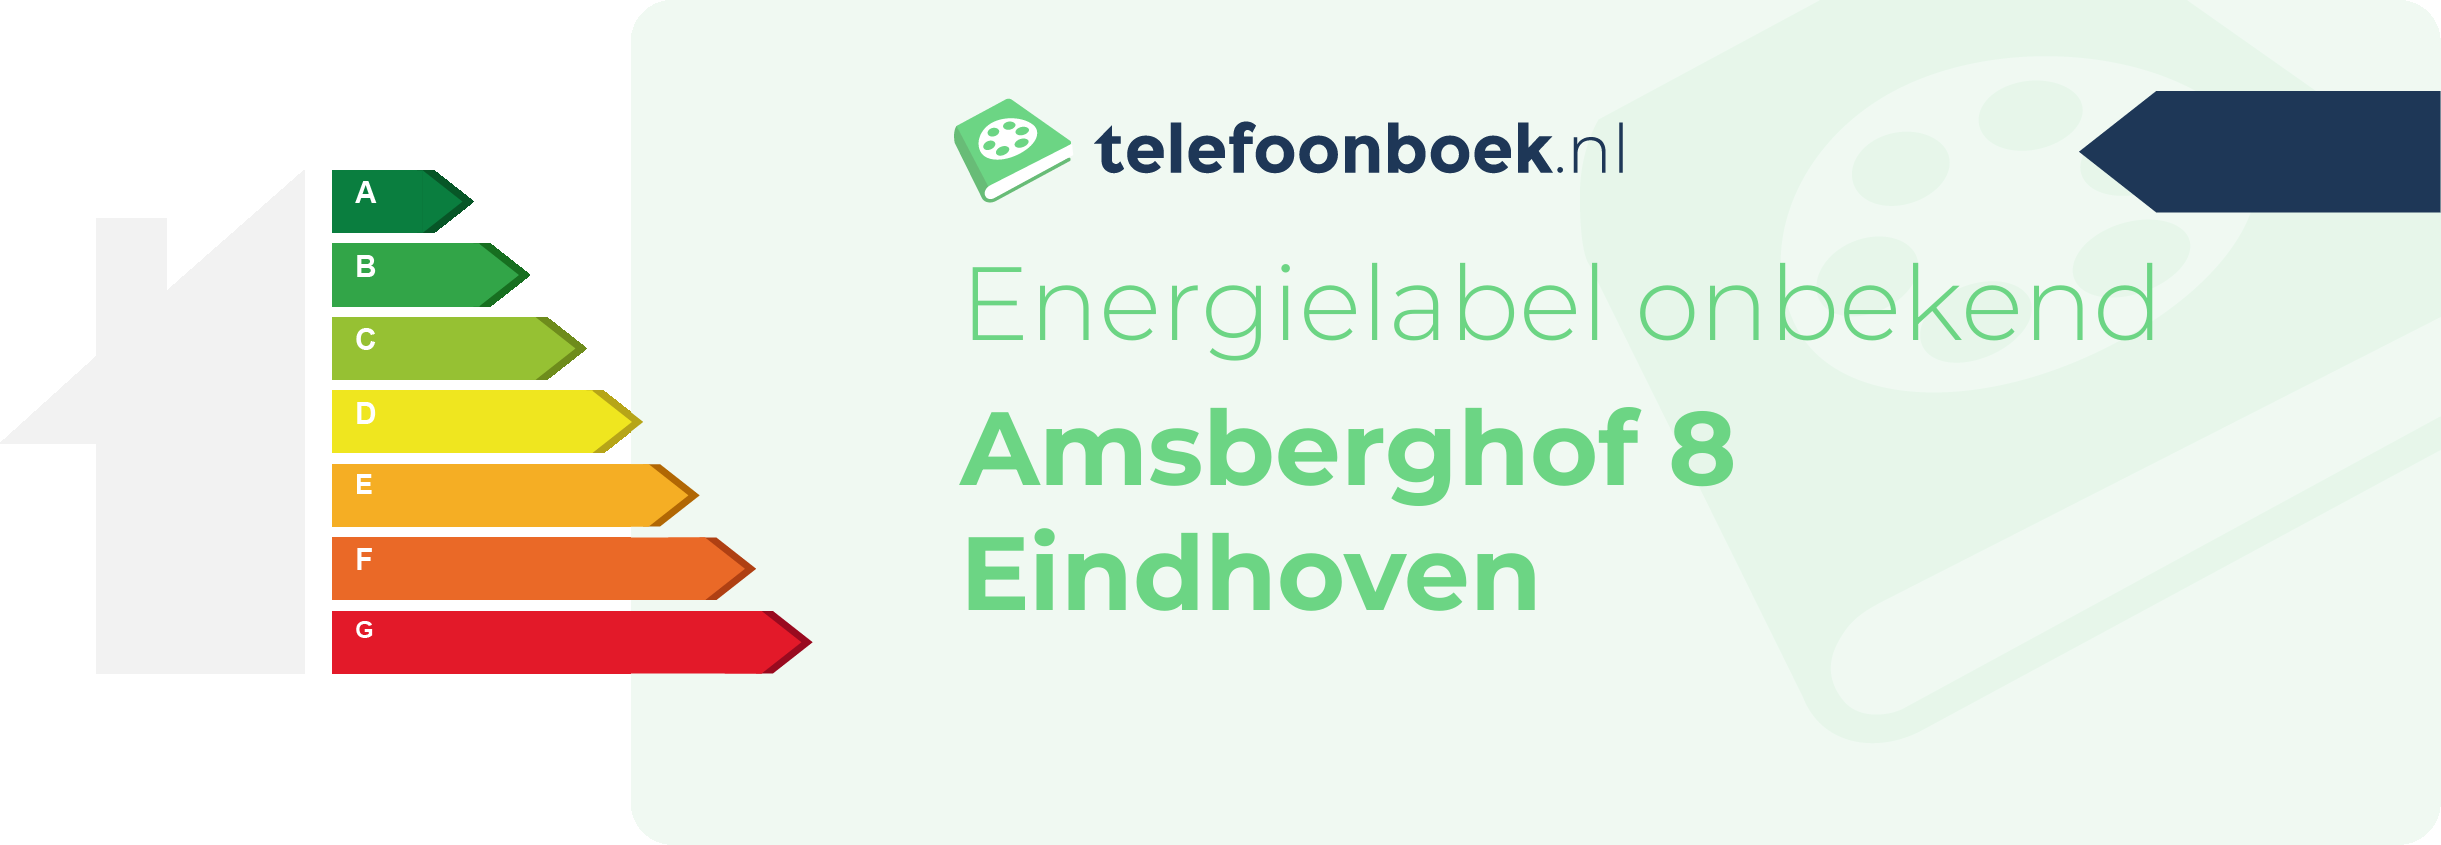 Energielabel Amsberghof 8 Eindhoven